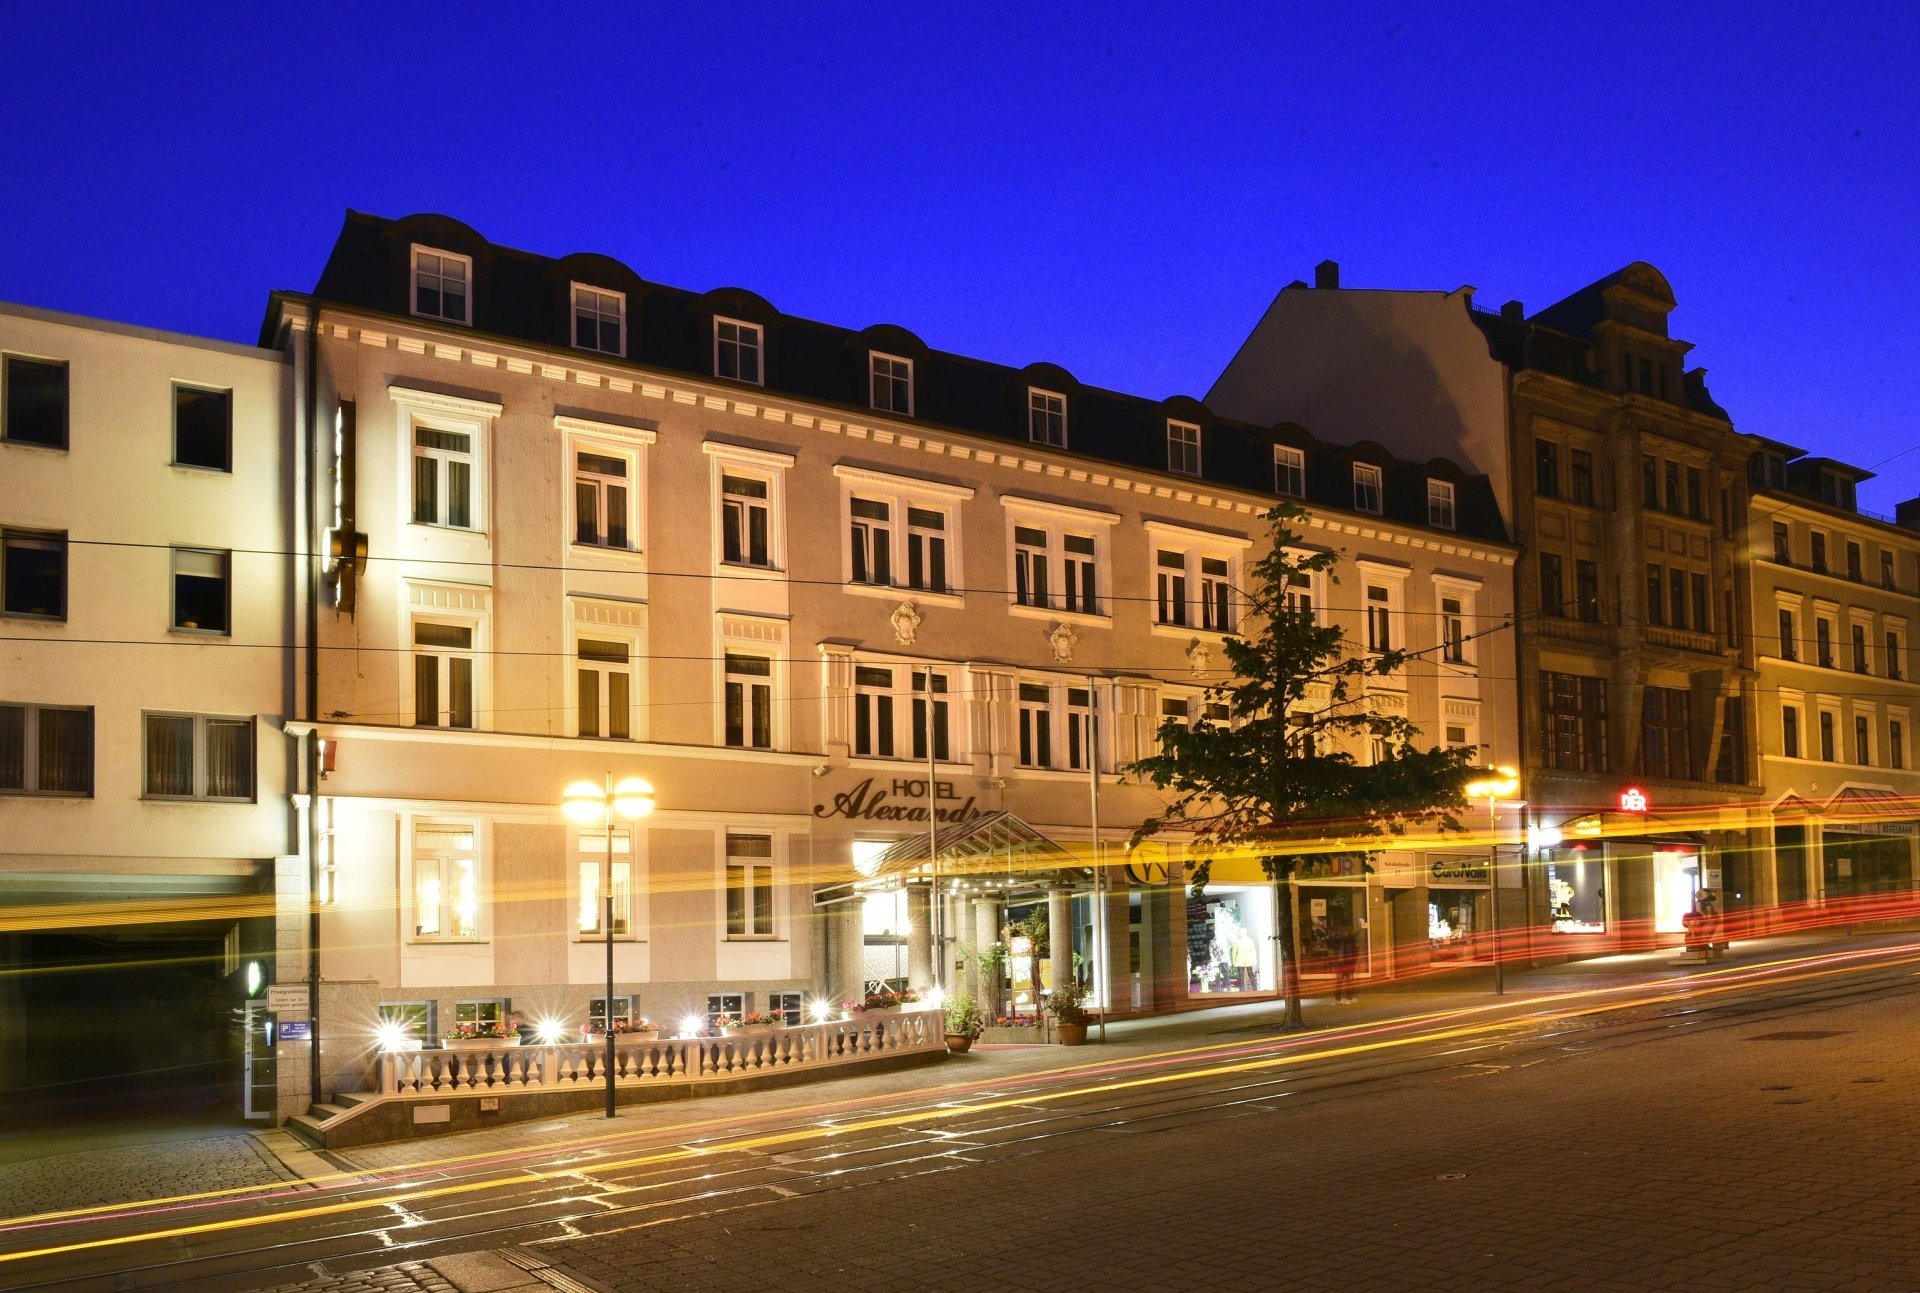 Seniorenzauber® (2 Nächte) – Hotel Alexandra (4 Sterne) in Plauen, Sachsen inkl. Halbpension